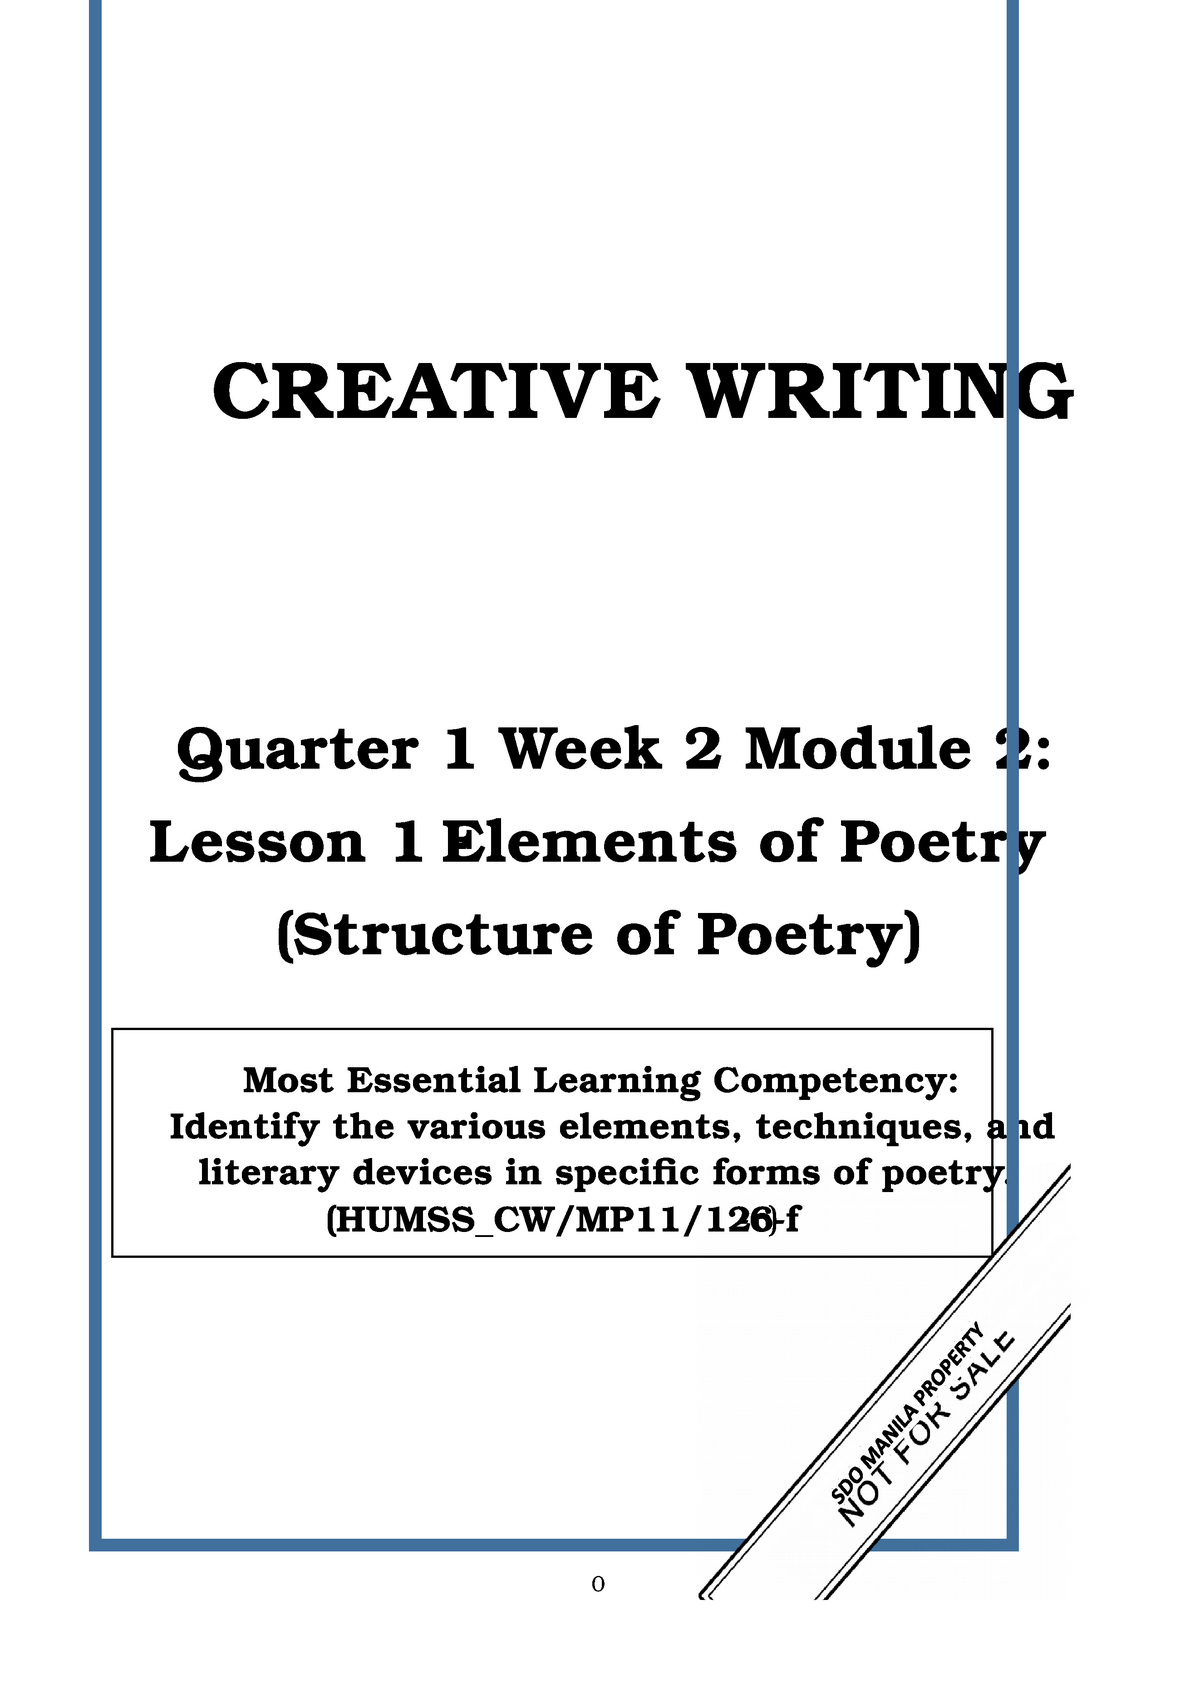 creative writing q2 module 2